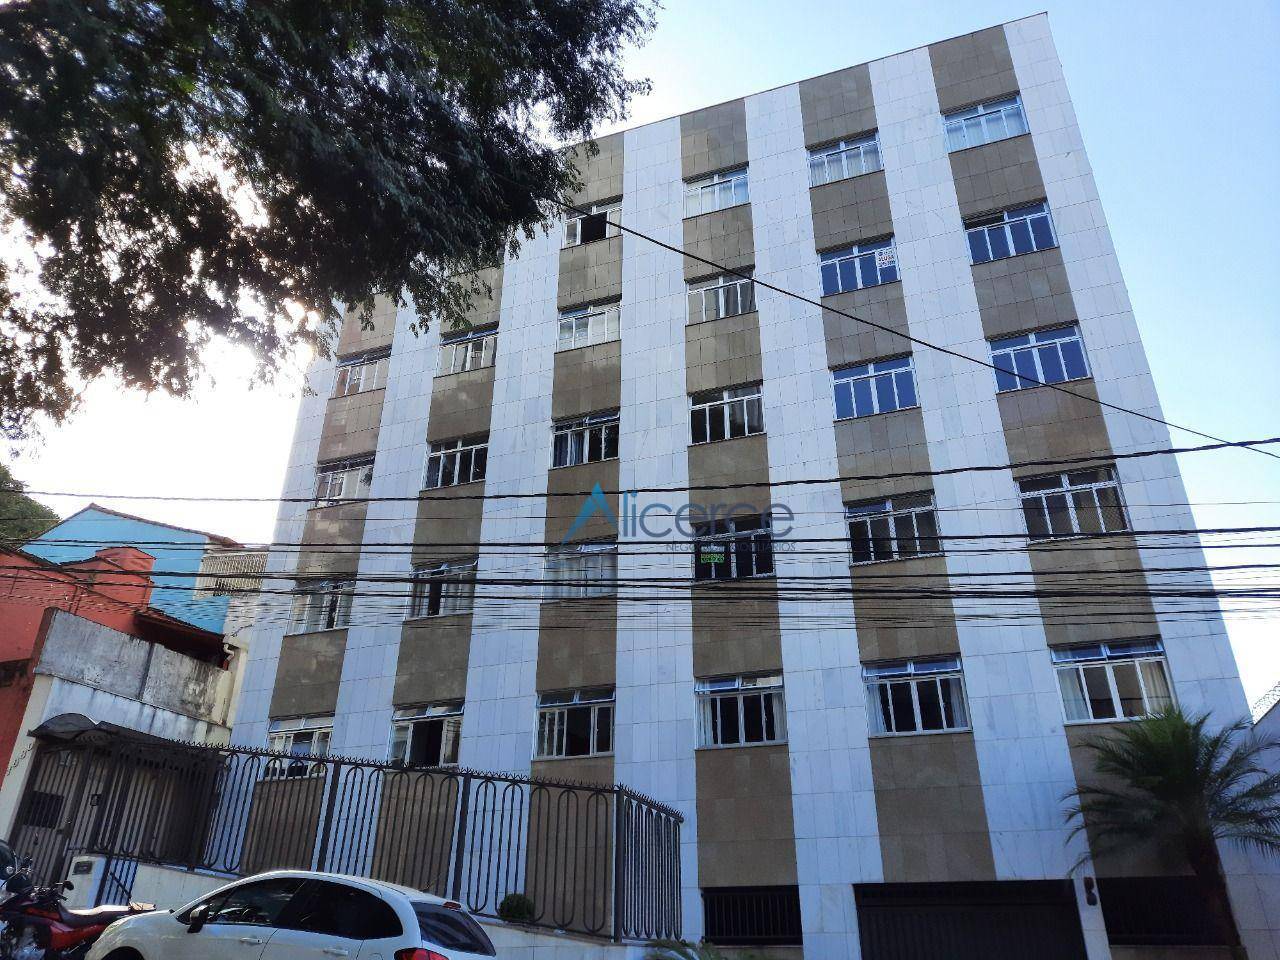 Apartamento com 1 dormitório à venda, 45 m² por R$ 159.000,00 - Centro - Juiz de Fora/MG